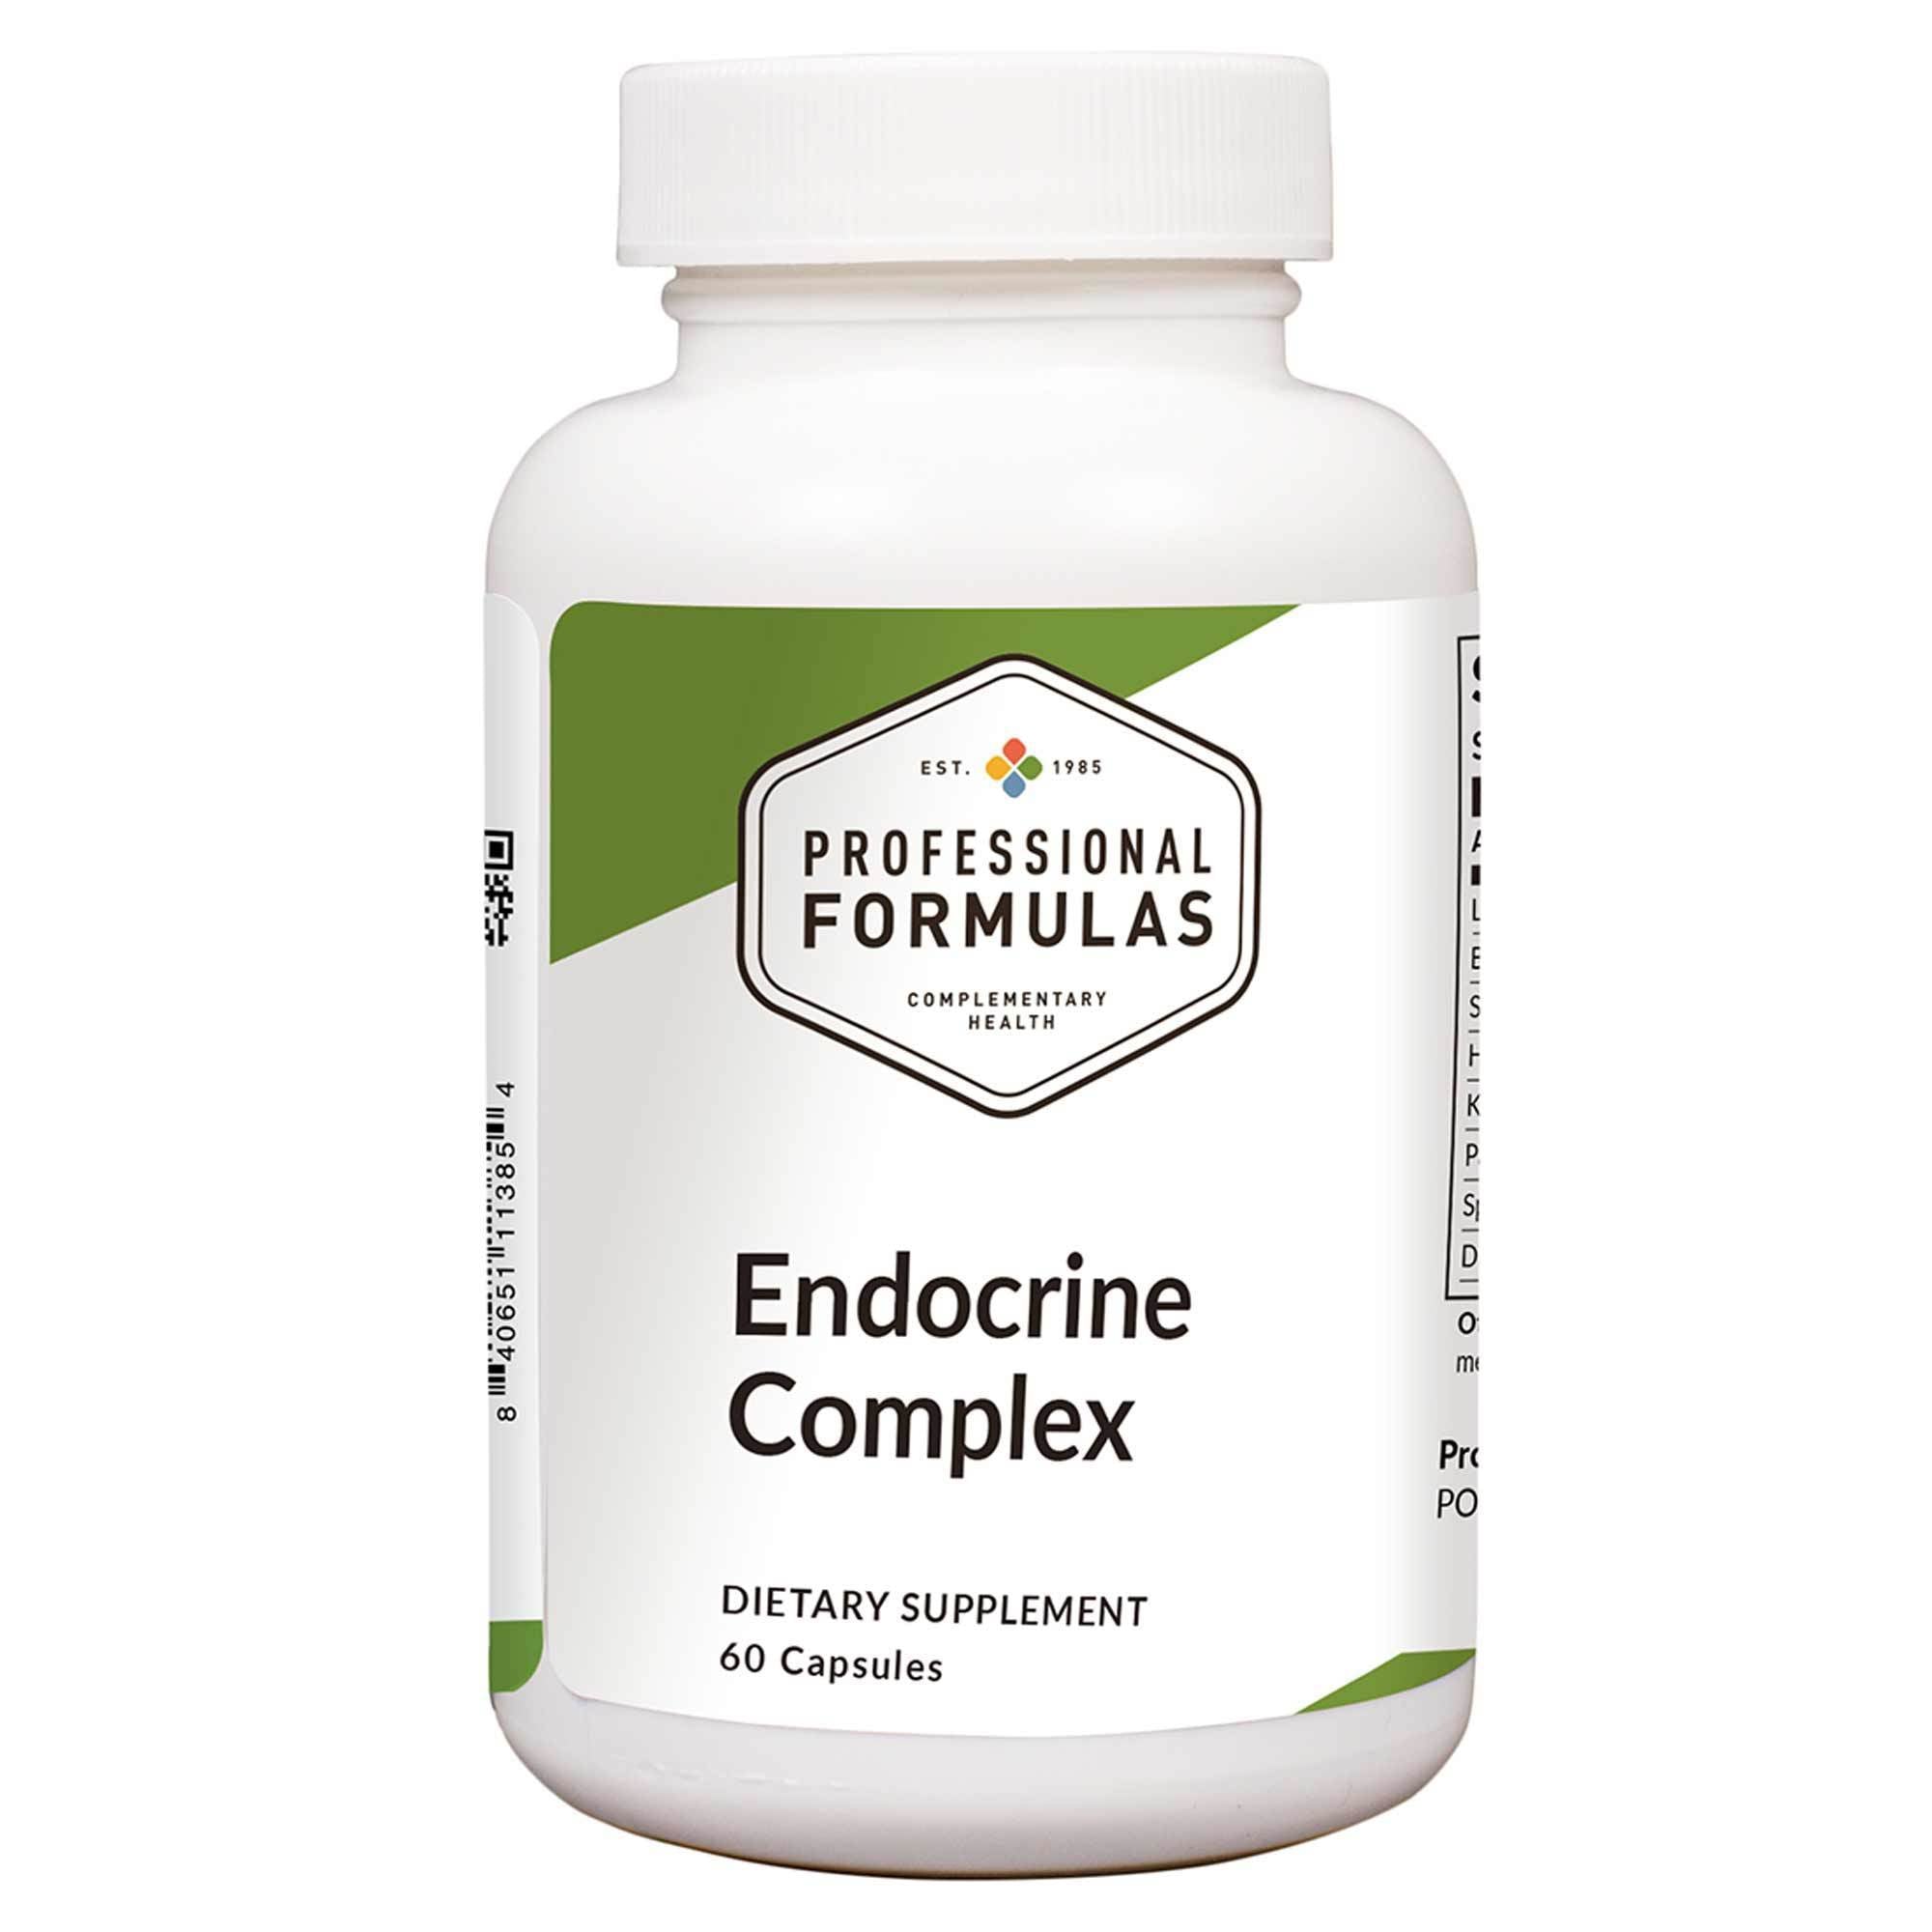 Professional Formulas Endocrine Complex 60 Capsules - 2 Pack